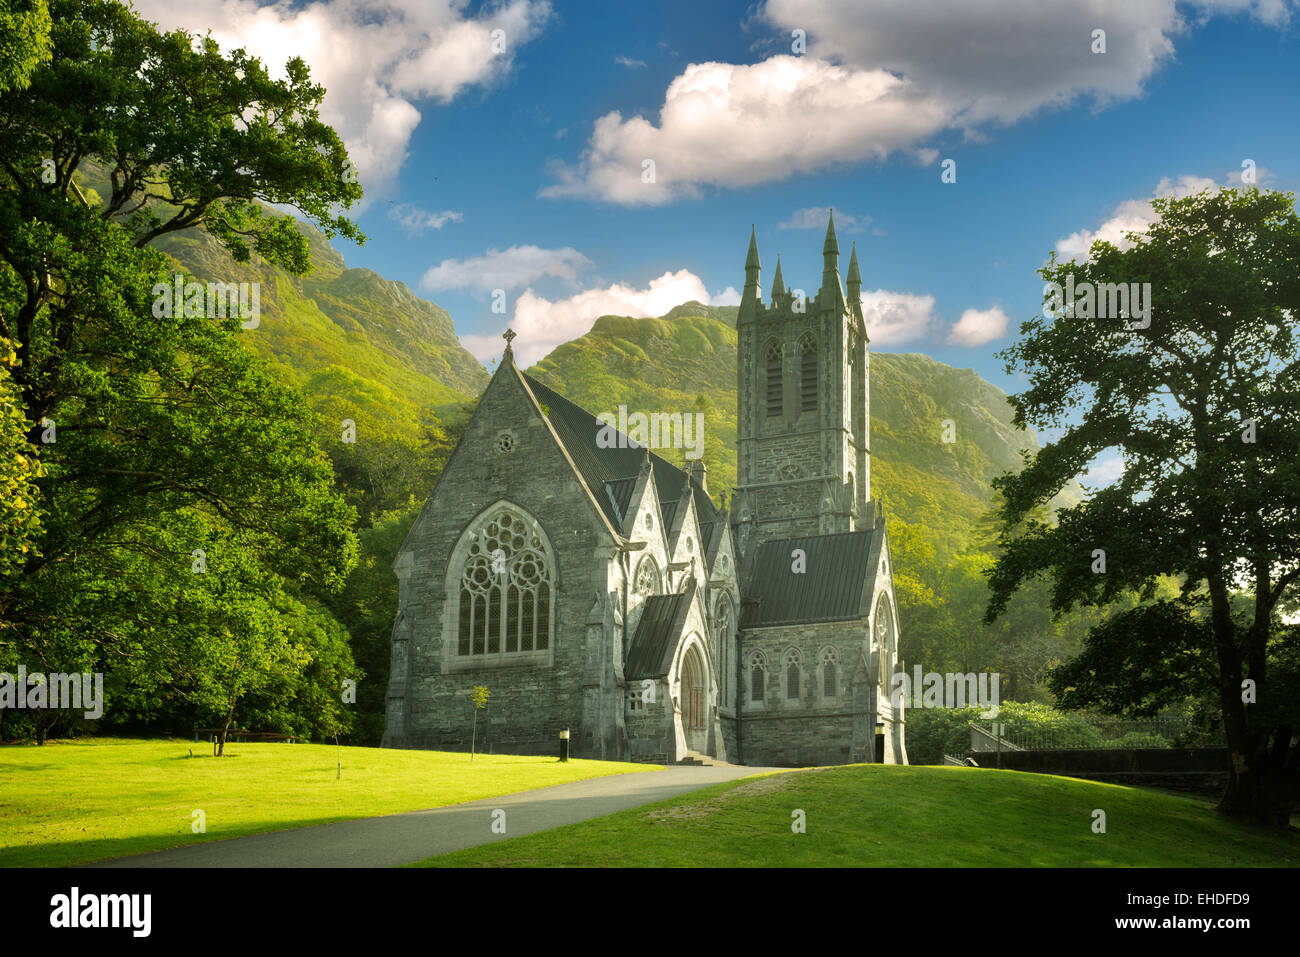 Gothic Church, Mary Henry's Memorial at the Kylemore Abbey. Connemara region, ireland Stock Photo